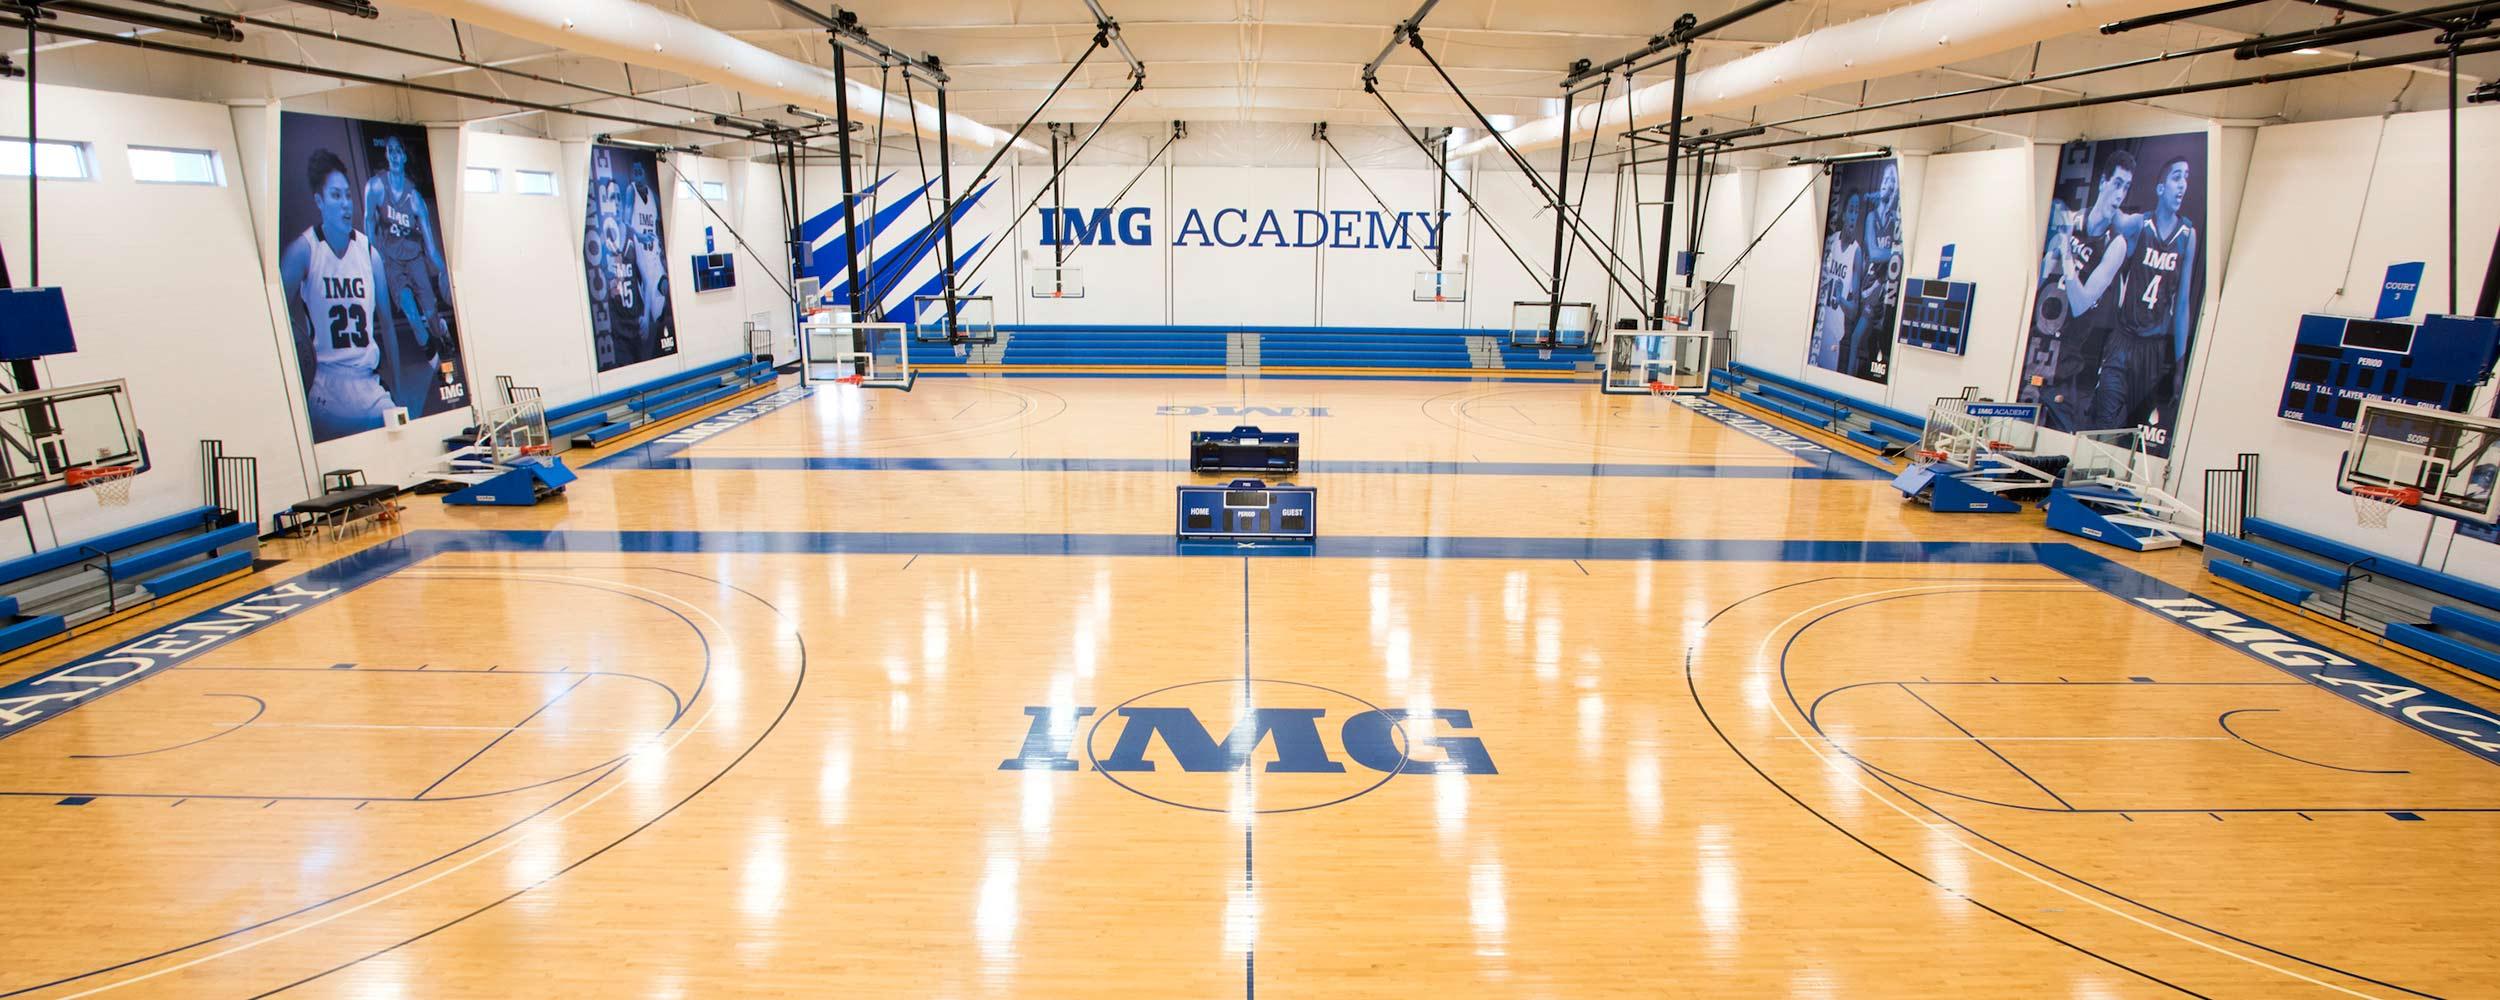 img academy basketball